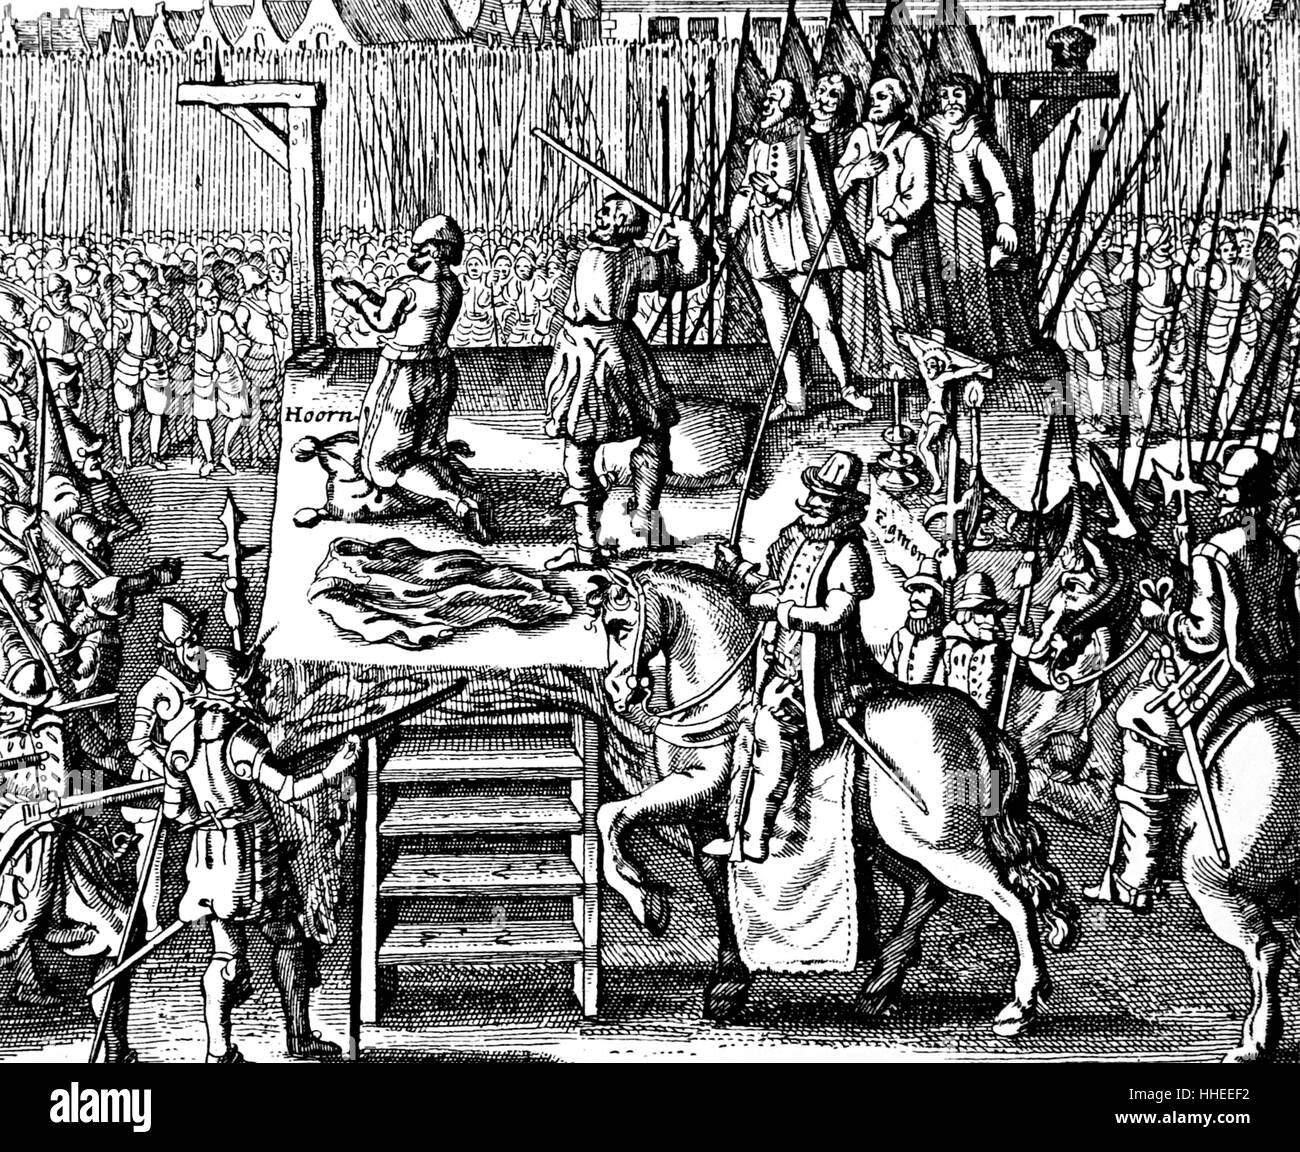 Gravure représentant l'exécution de Lamoral, comte d'Egmont et Philippe de Montmorency, comte de Horn lors la tyrannie espagnole aux Pays-Bas. Le duc d'Alva, qui ont appliqué la règle Catholique Espagnol brutal dans le Pays-Bas Protestants, est représenté sur un cheval. En date du 16e siècle Banque D'Images